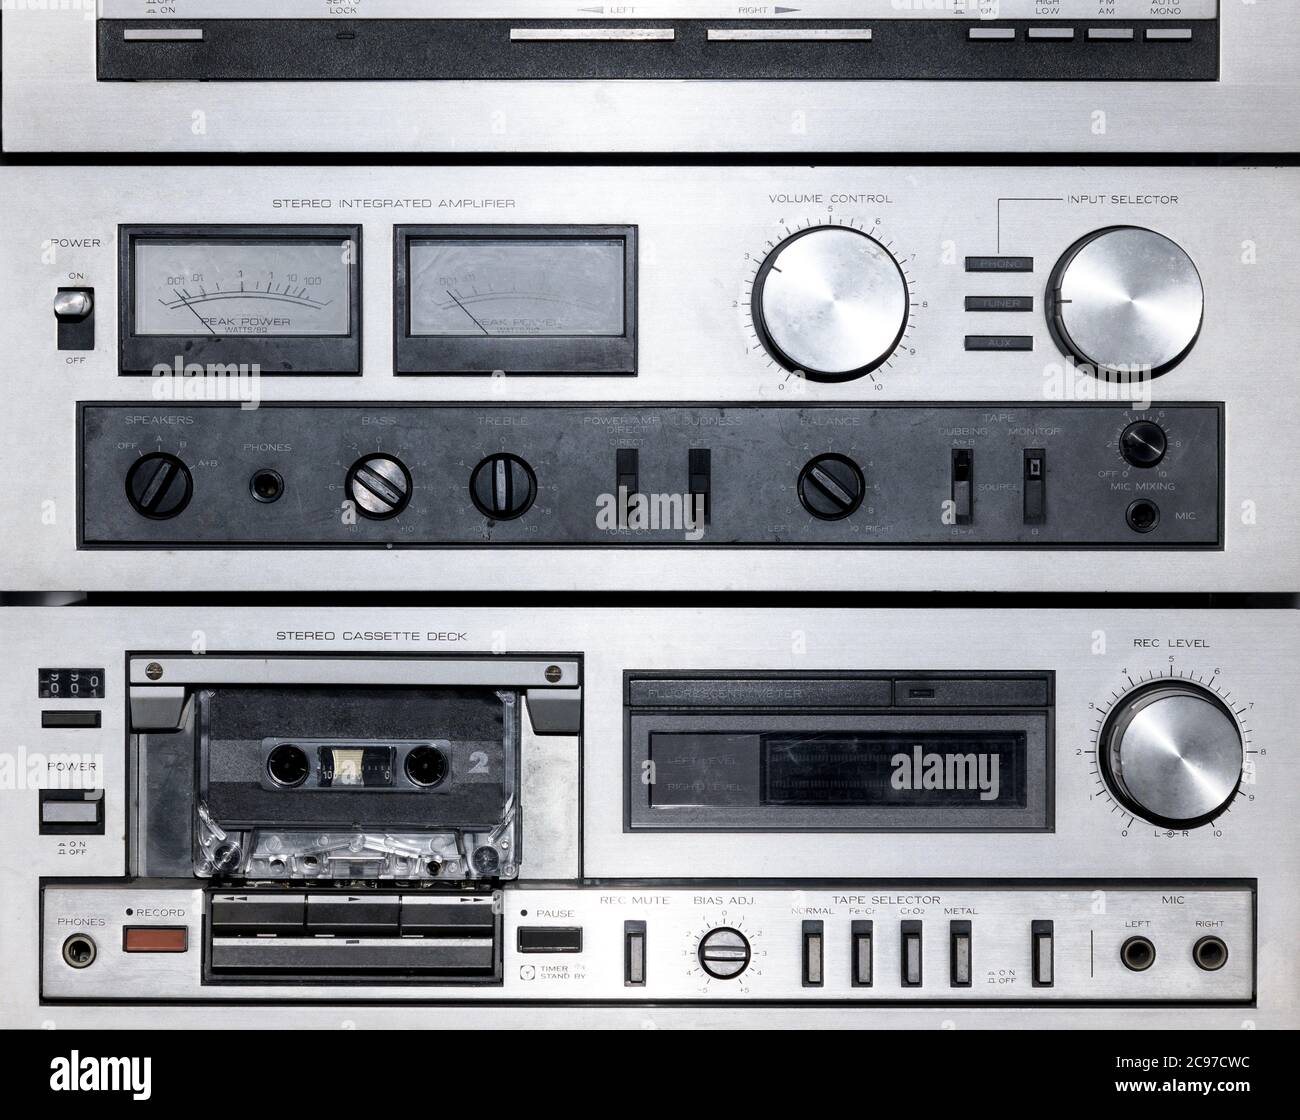 Nahaufnahme auf den Zifferblättern und Steuerelementen eines alten Stereo-Musik-Players, der das Kassettendeck für alte Audiokassetten zeigt Stockfoto